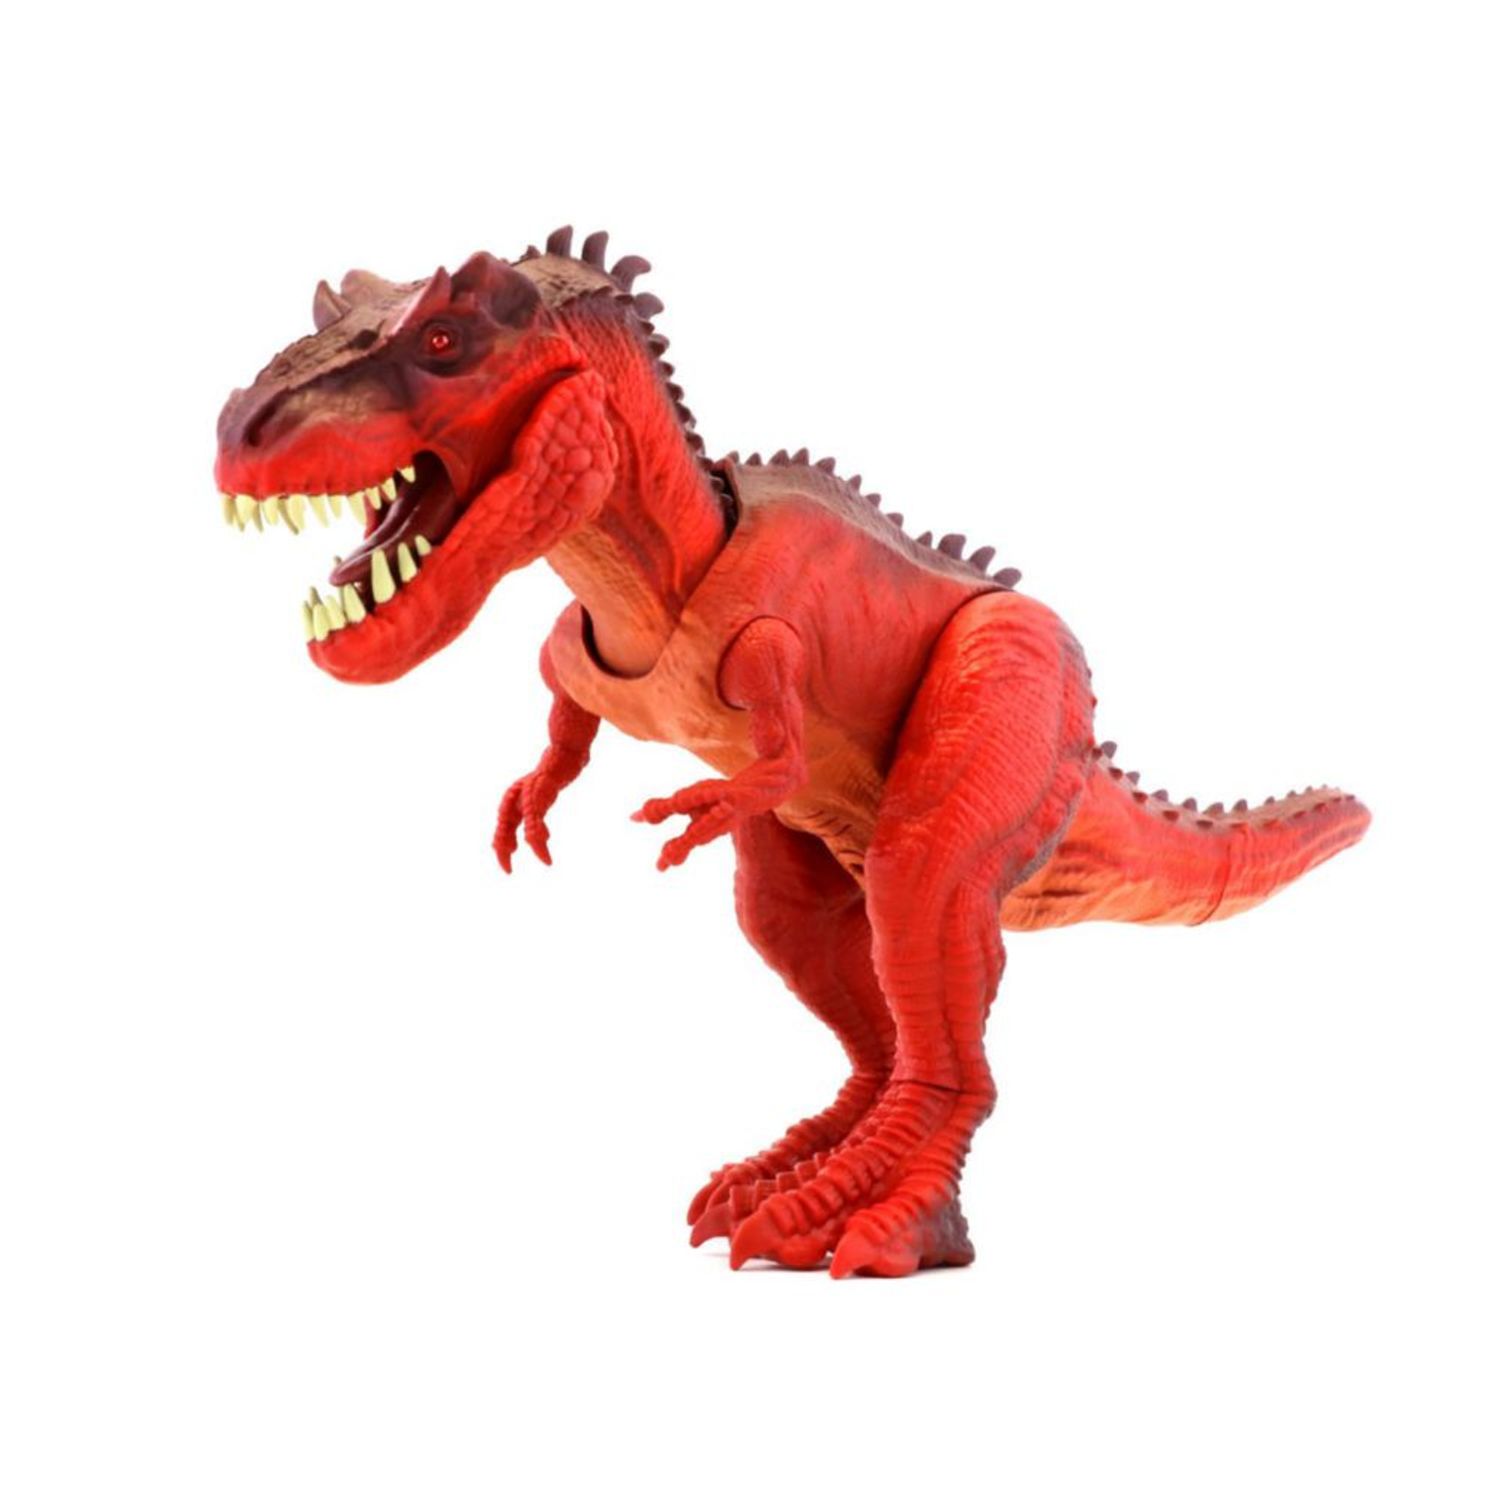 Juguetes de Dinosaurios para Niños Pequeños de 3 a 5 Años I Oechsle